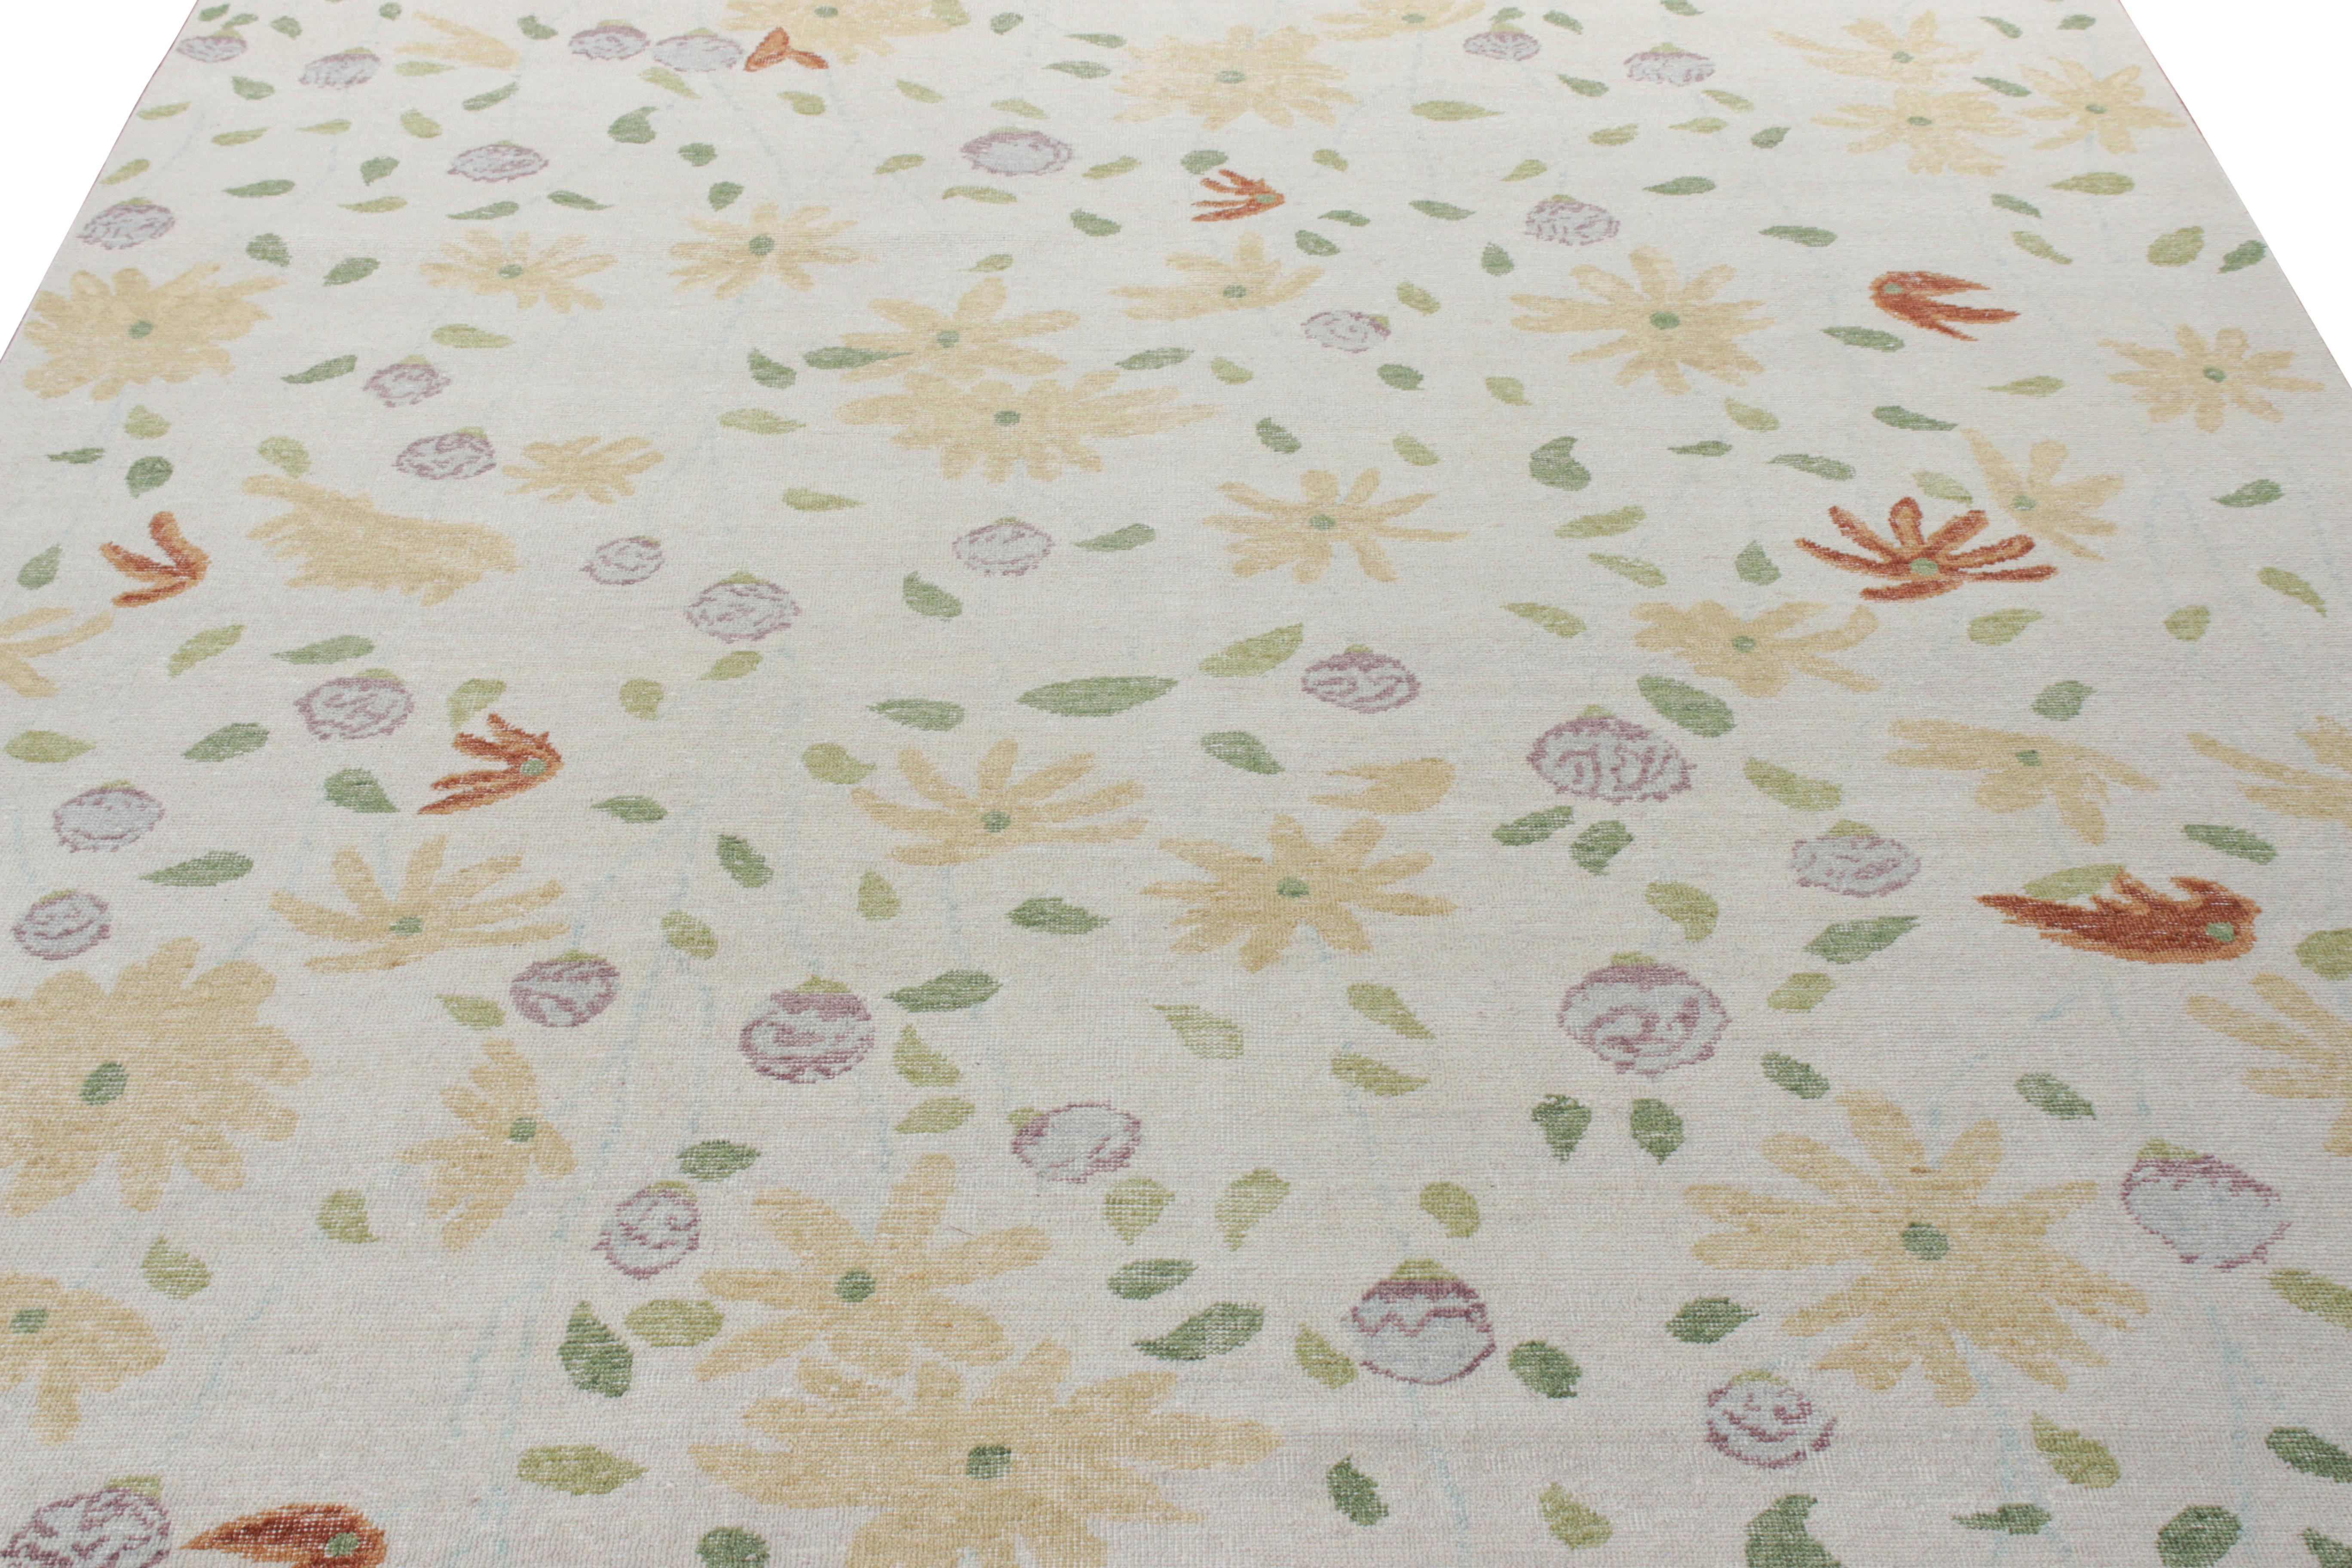 Noué à la main en laine, ce tapis contemporain 10x14 fait partie de la collection Homage de Rug & Kilim - une nouvelle encyclopédie texturale audacieuse de styles.

Sur le motif : Cette pièce marie des motifs floraux impressionnistes dans les